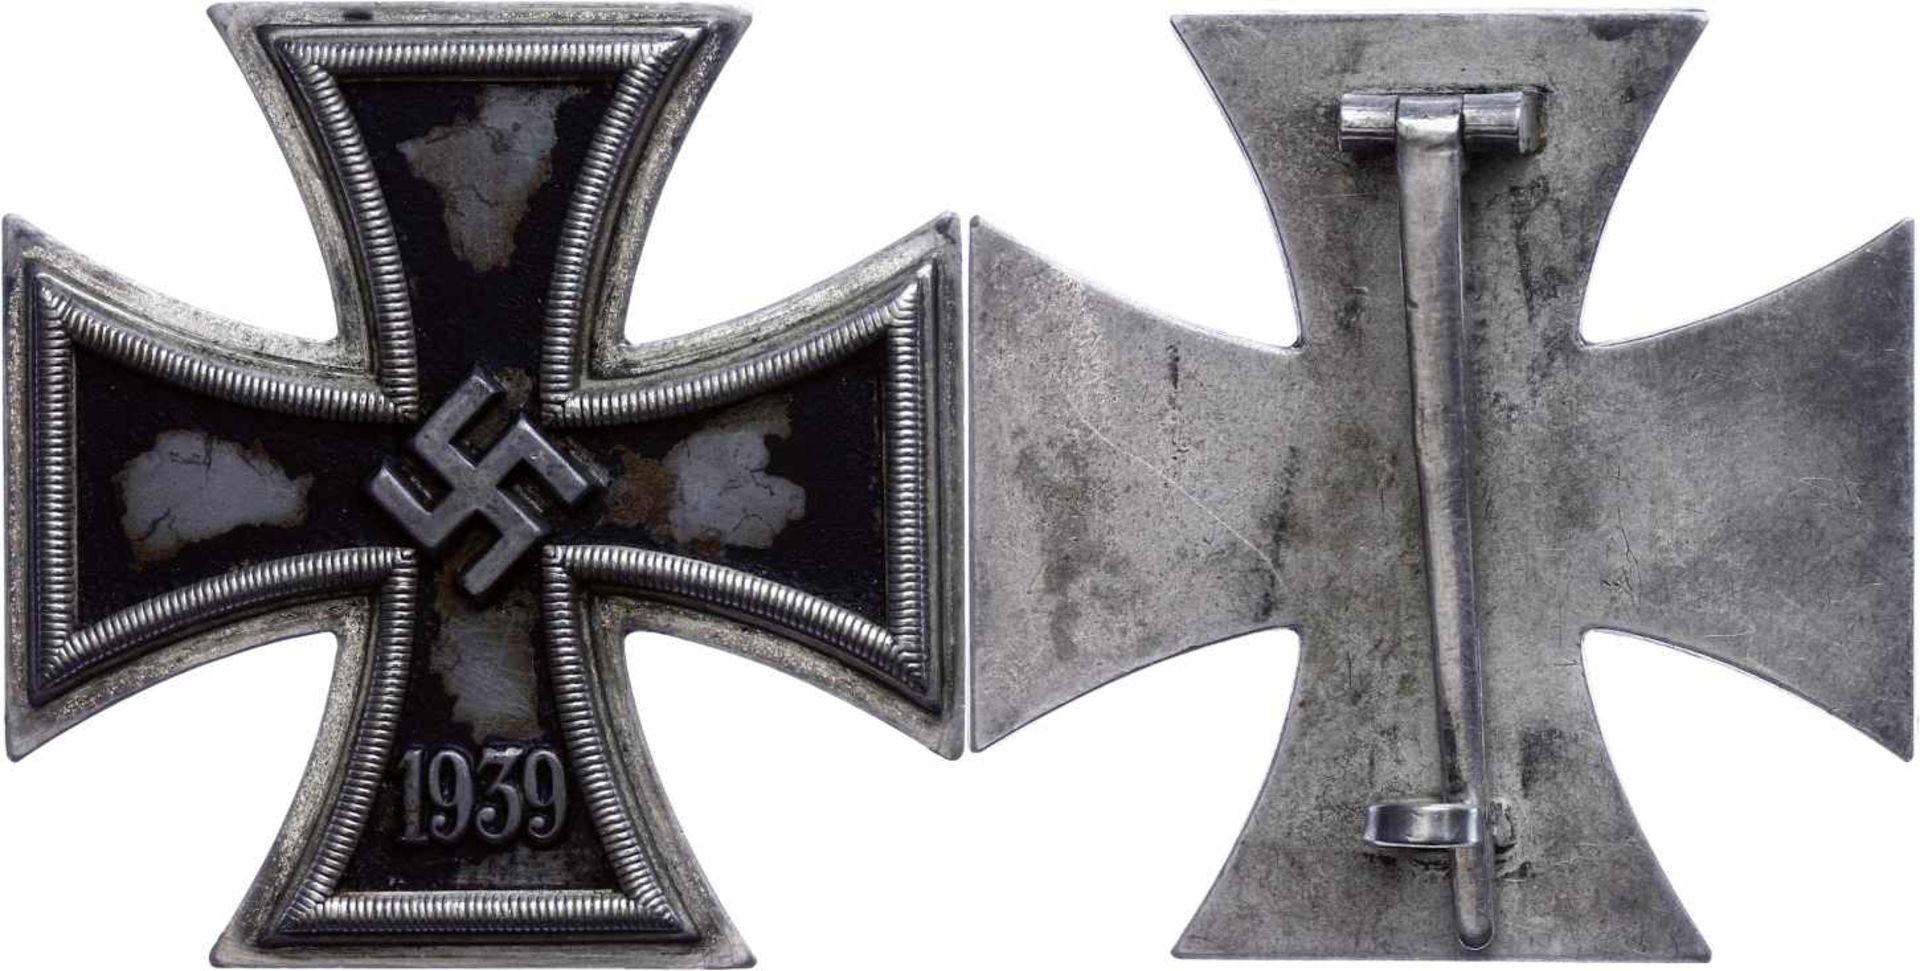 Allg. militärische Auszeichnungen 2. Weltkrieg Eisernes Kreuz 1. Klasse 1939-1945, flach, Nadel